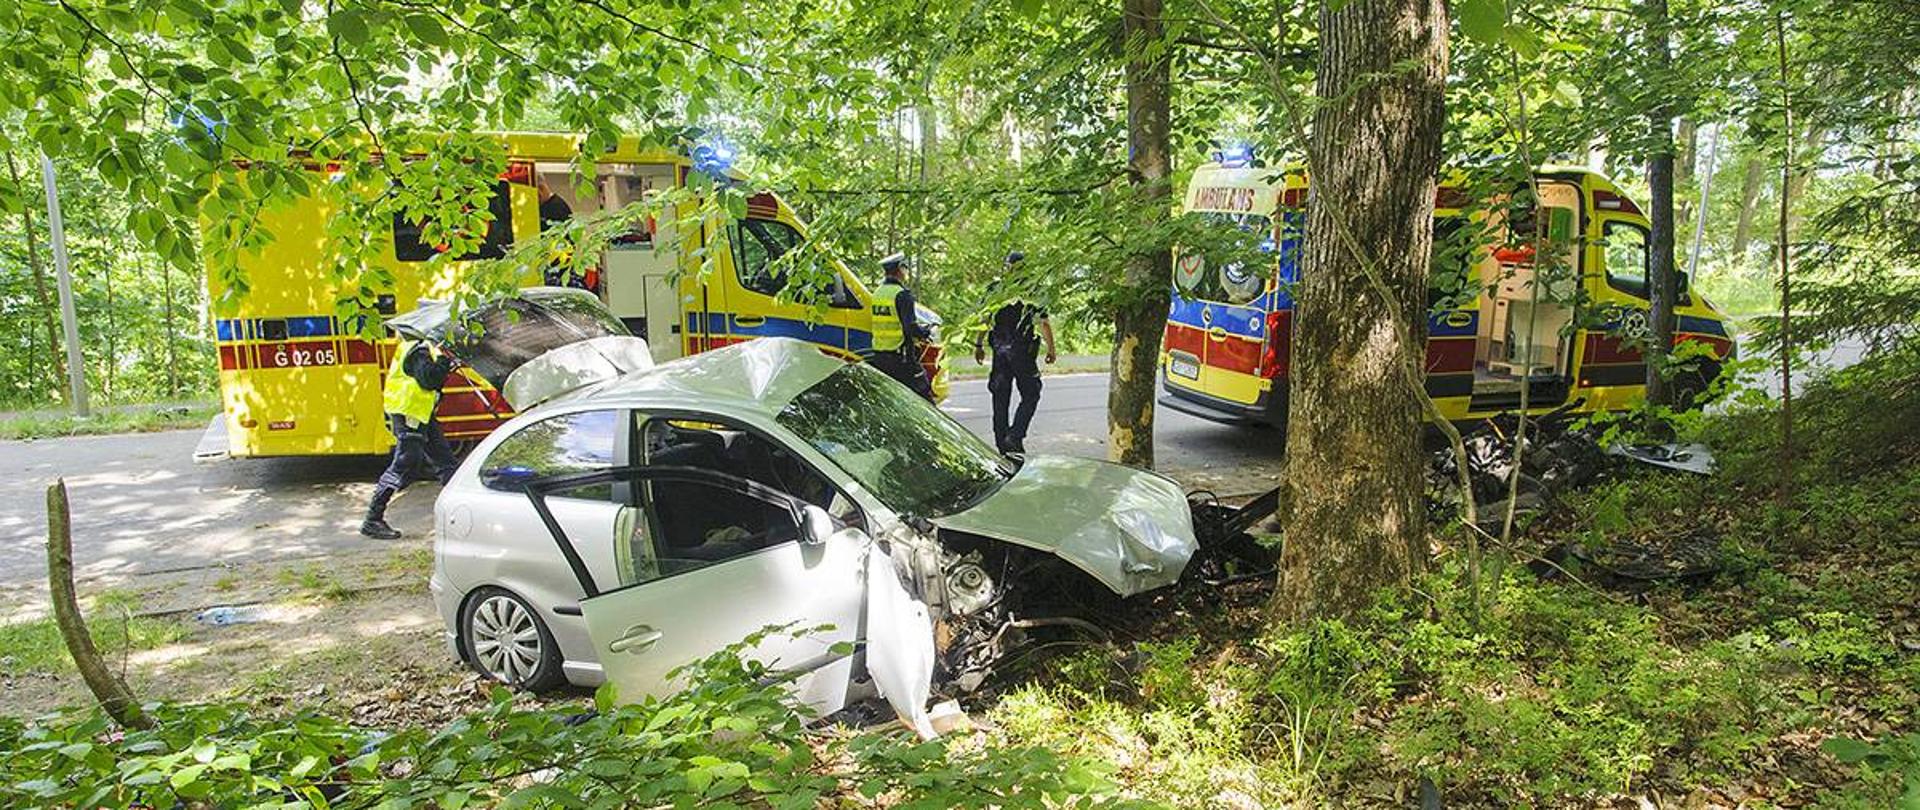 Na zdjęciu widać rozbity samochód osobowy koloru szarego który uderzył w drzewo. W oddali widać dwa samochodu Zespołów Ratownictwa Medycznego oraz pracujących na miejscu Policjantów.